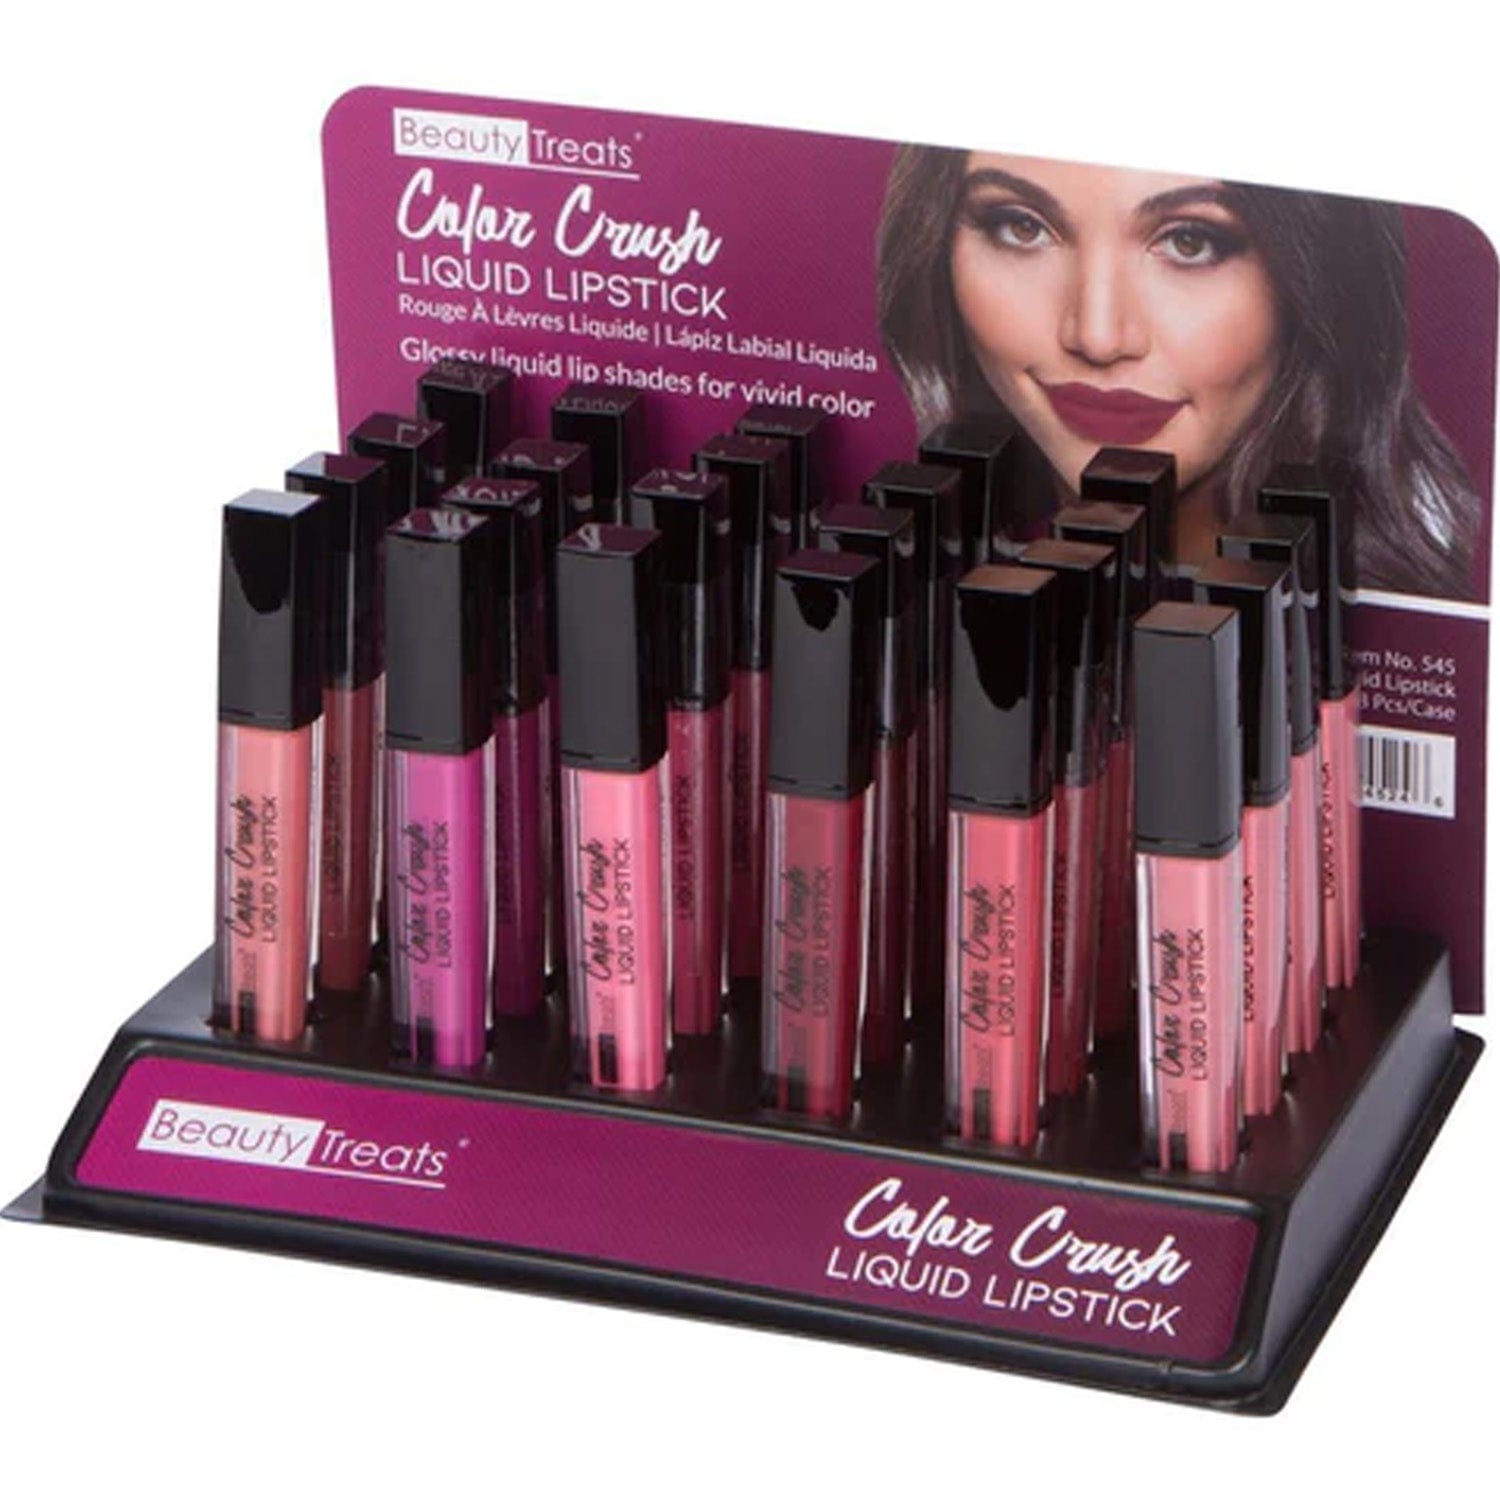 Color Crush Liquid Lipstick